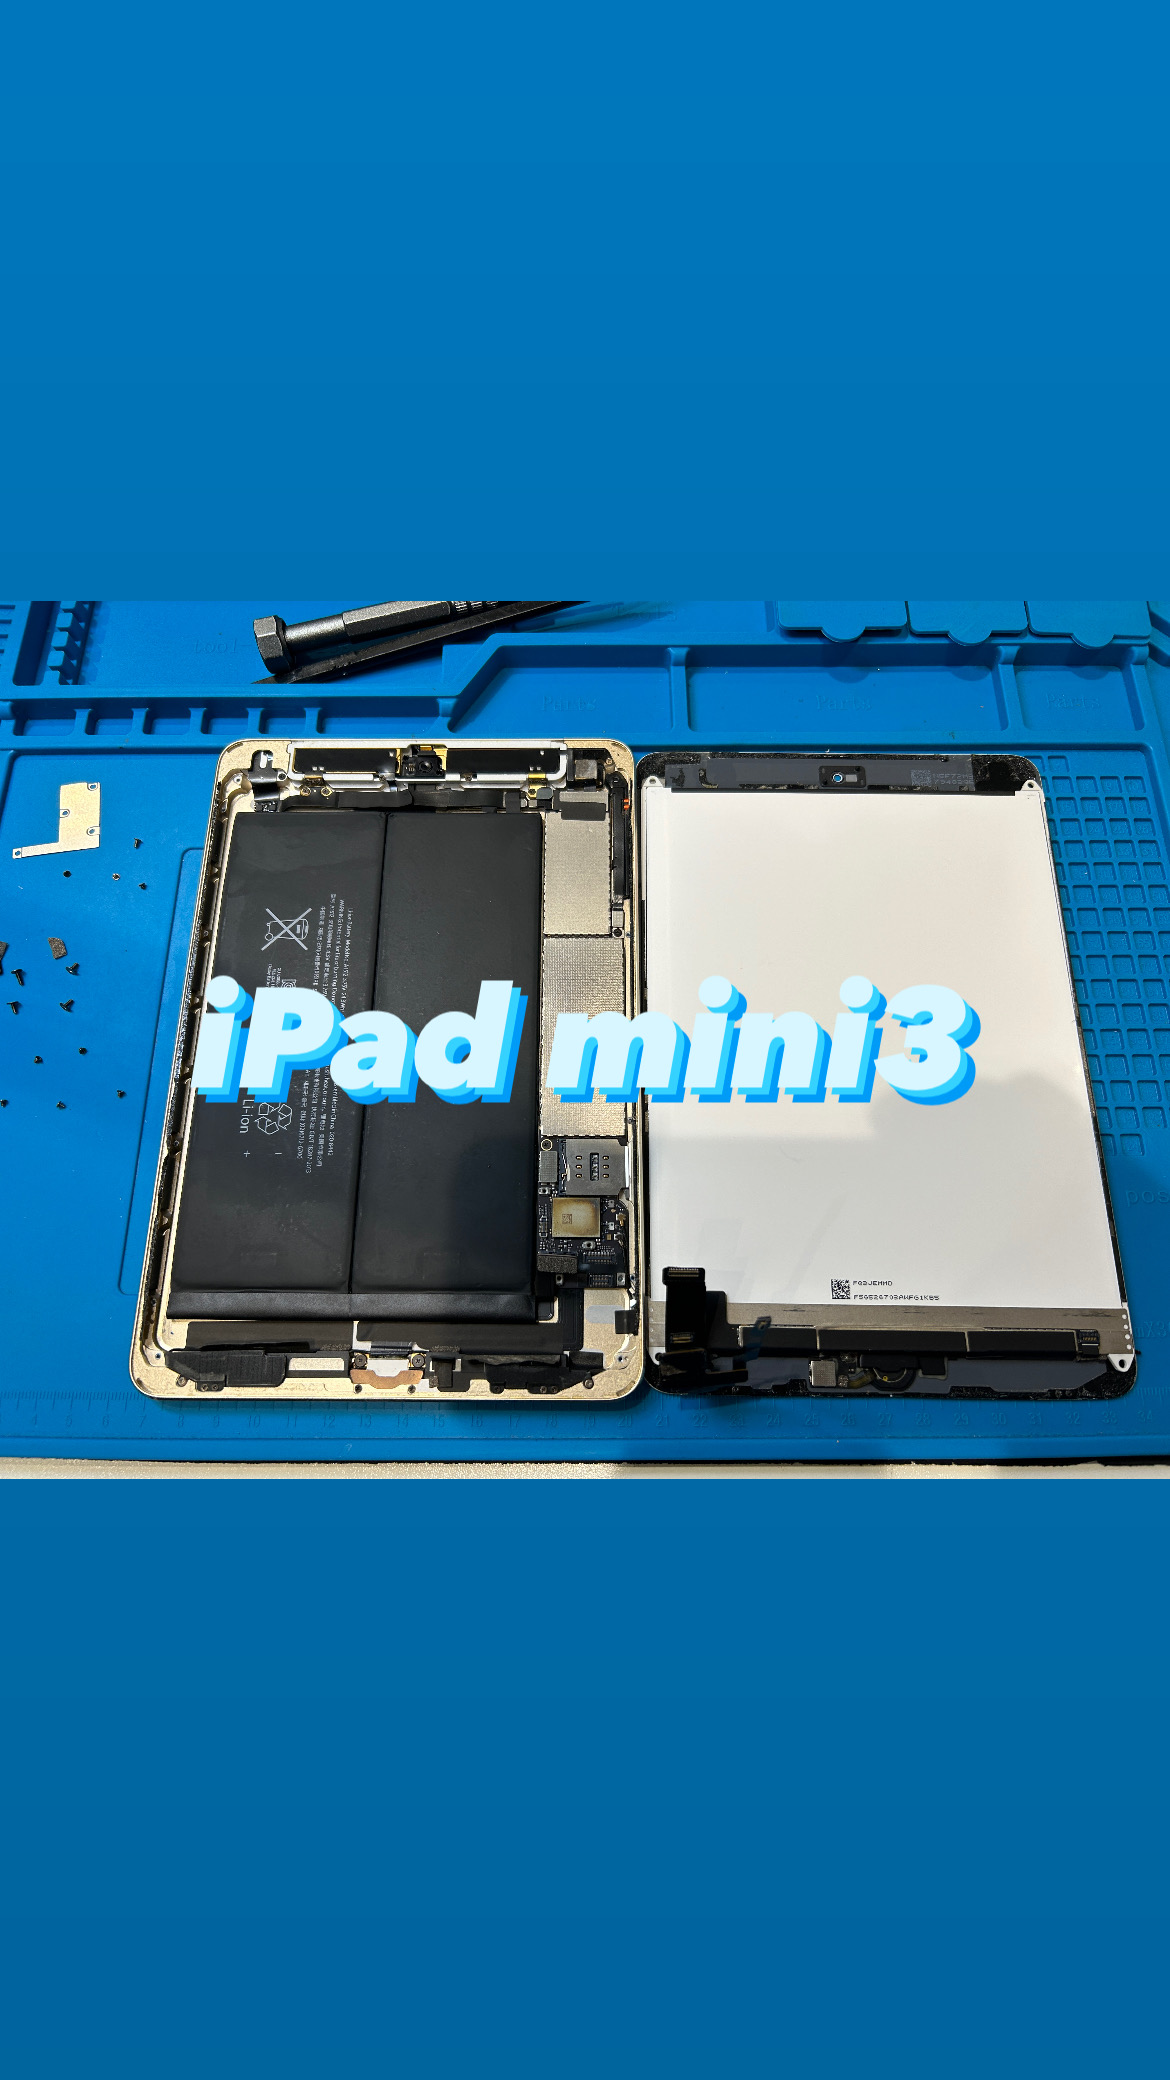 【本日の修理】iPad mini3 バッテリー交換